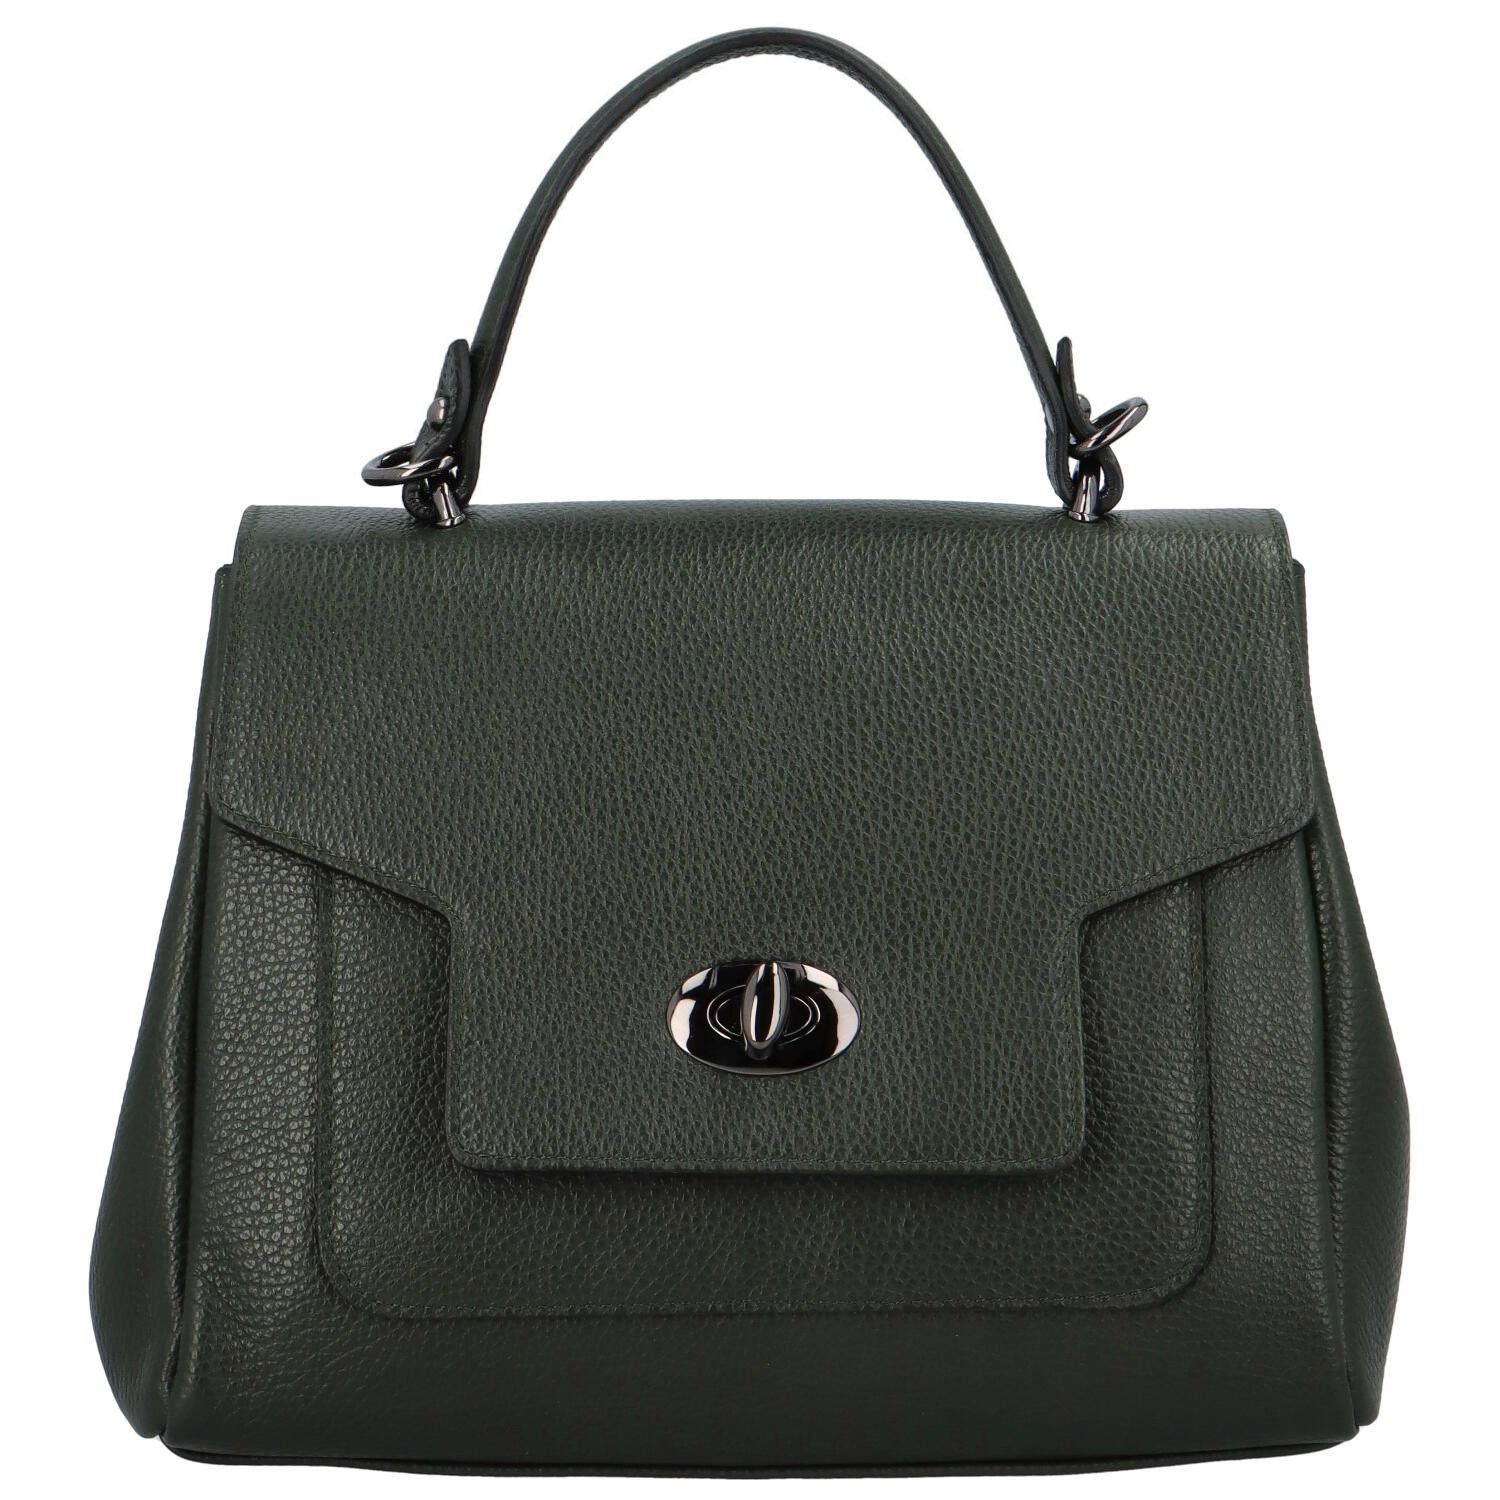 Dámská kožená kabelka do ruky tmavě zelená - Delami Riley zelená